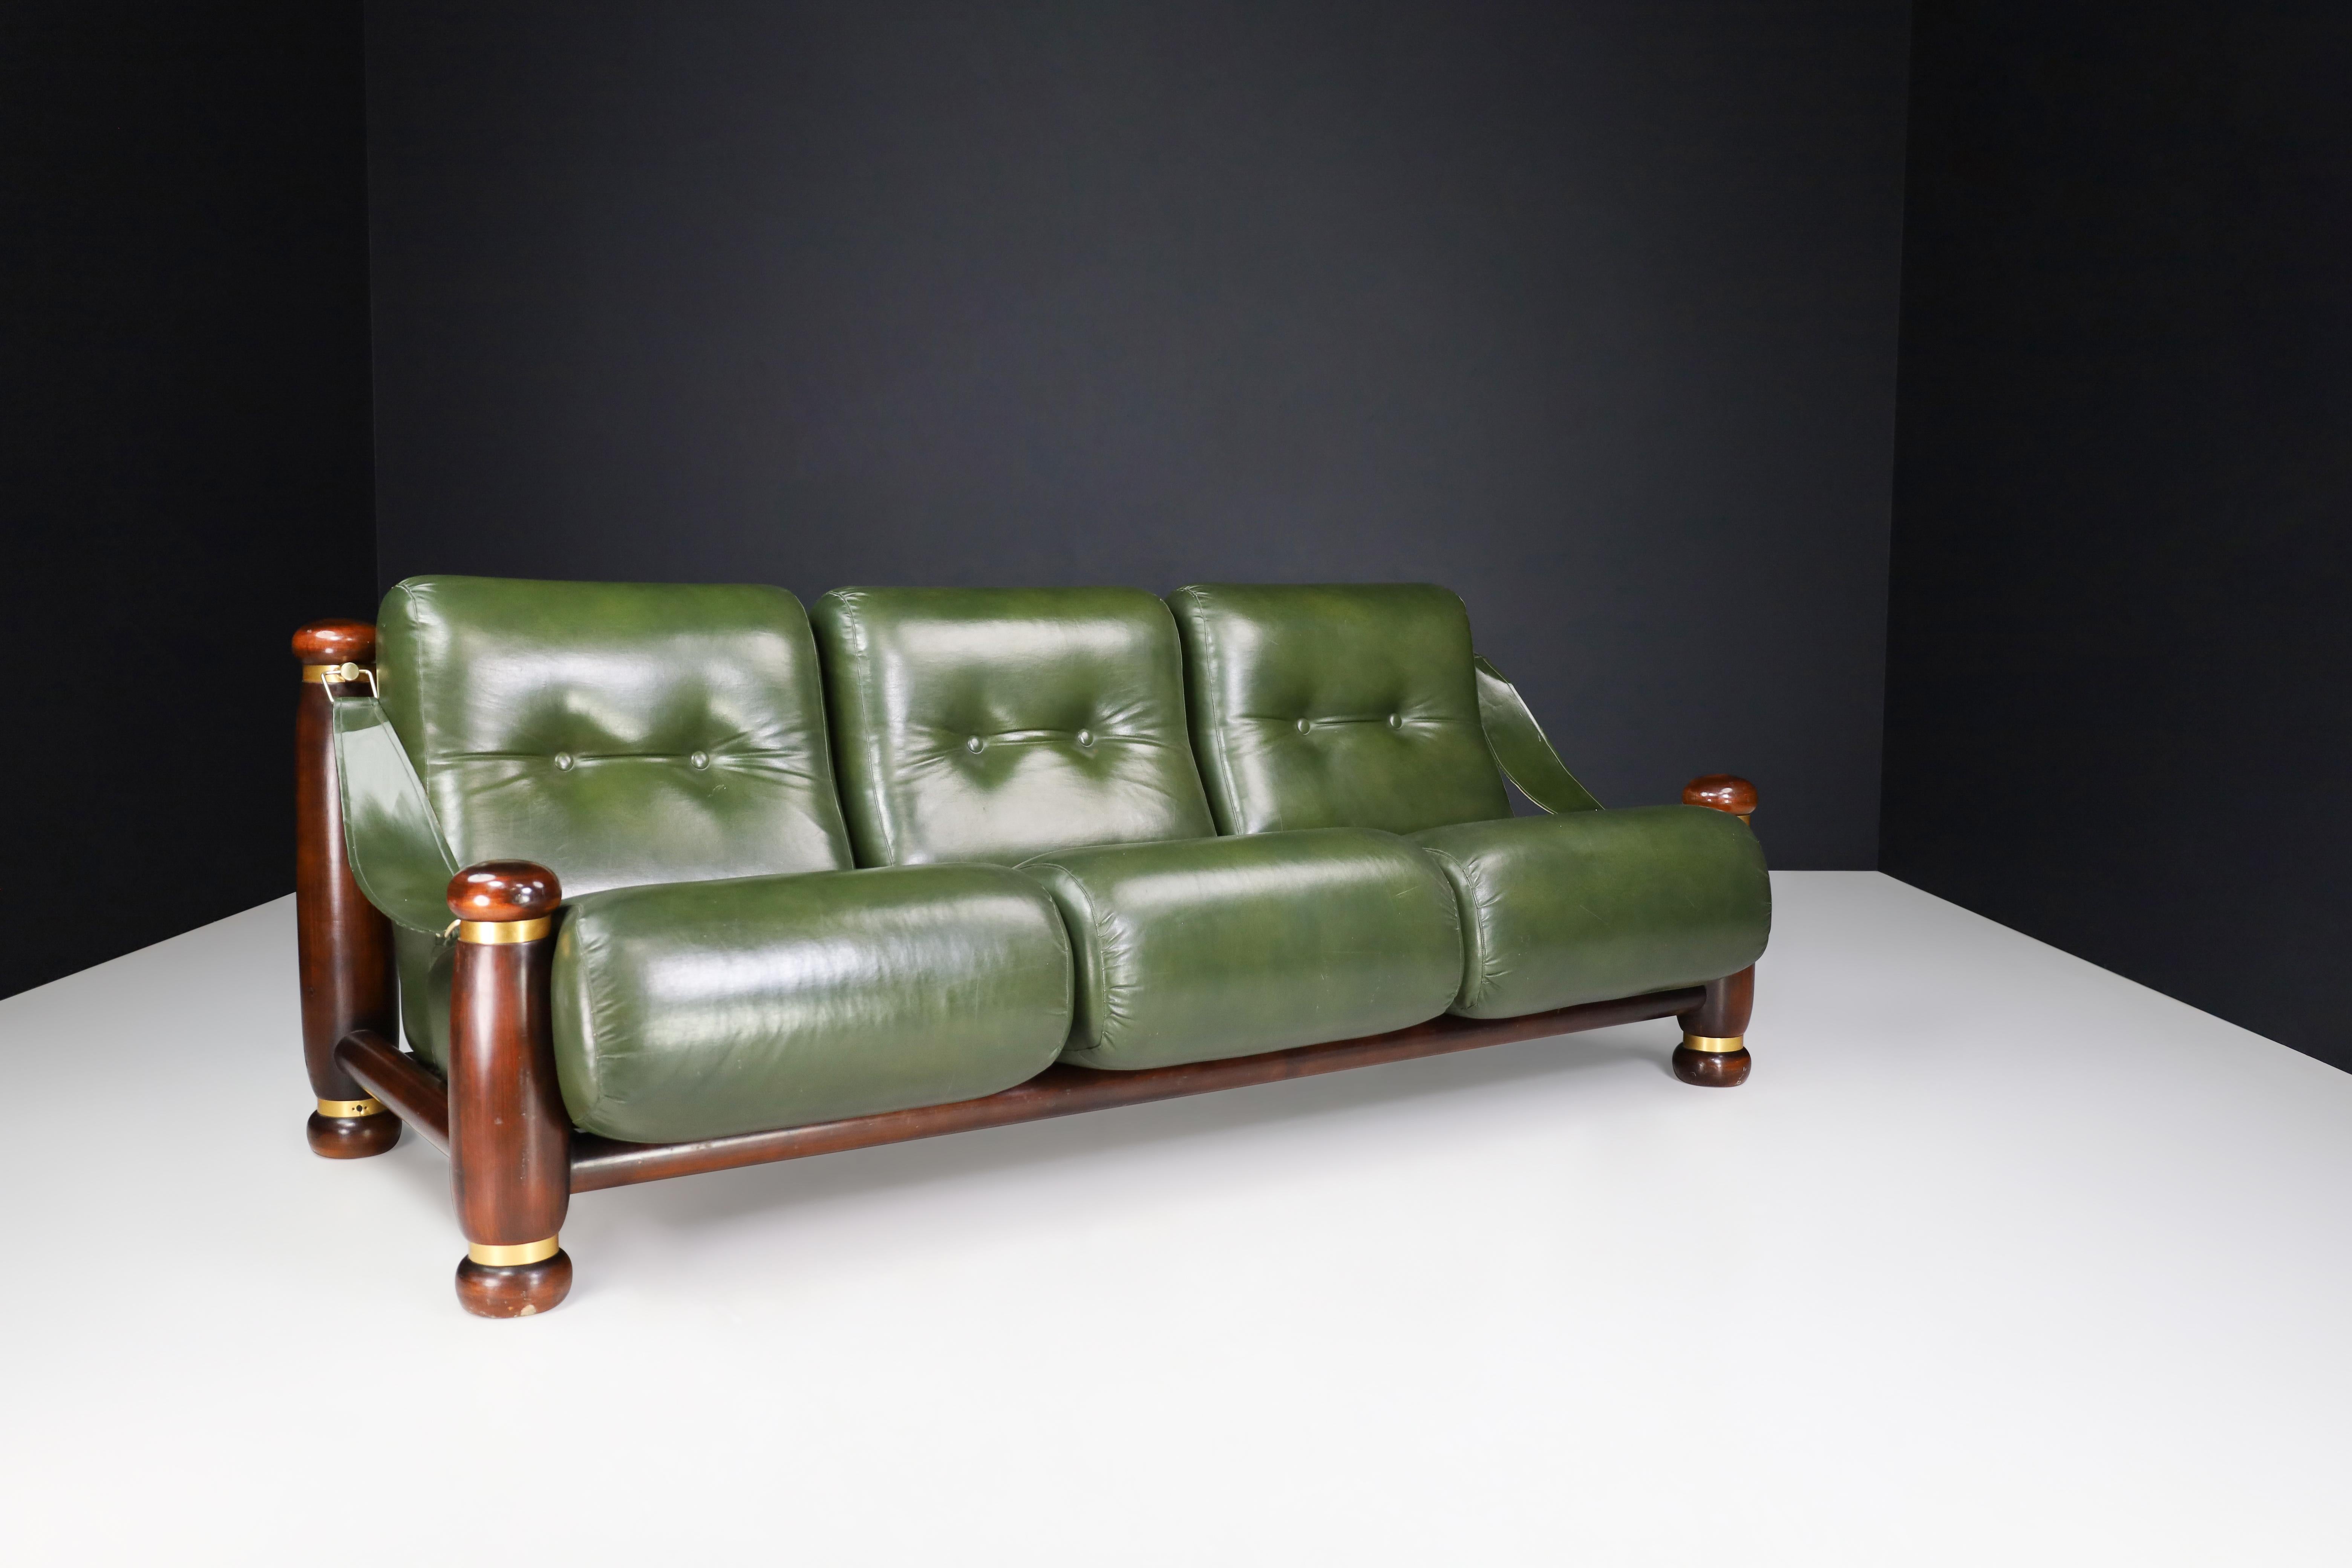 Dreisitziges Sofa aus Nussbaumholz, Messing und grünem Leder aus Italien, 1960er Jahre

Dieses wuchtige Lounge-Sofa mit drei Sitzen, das in den 1960er Jahren in Italien hergestellt wurde, zeichnet sich durch ein stilvolles Design aus, das Elemente